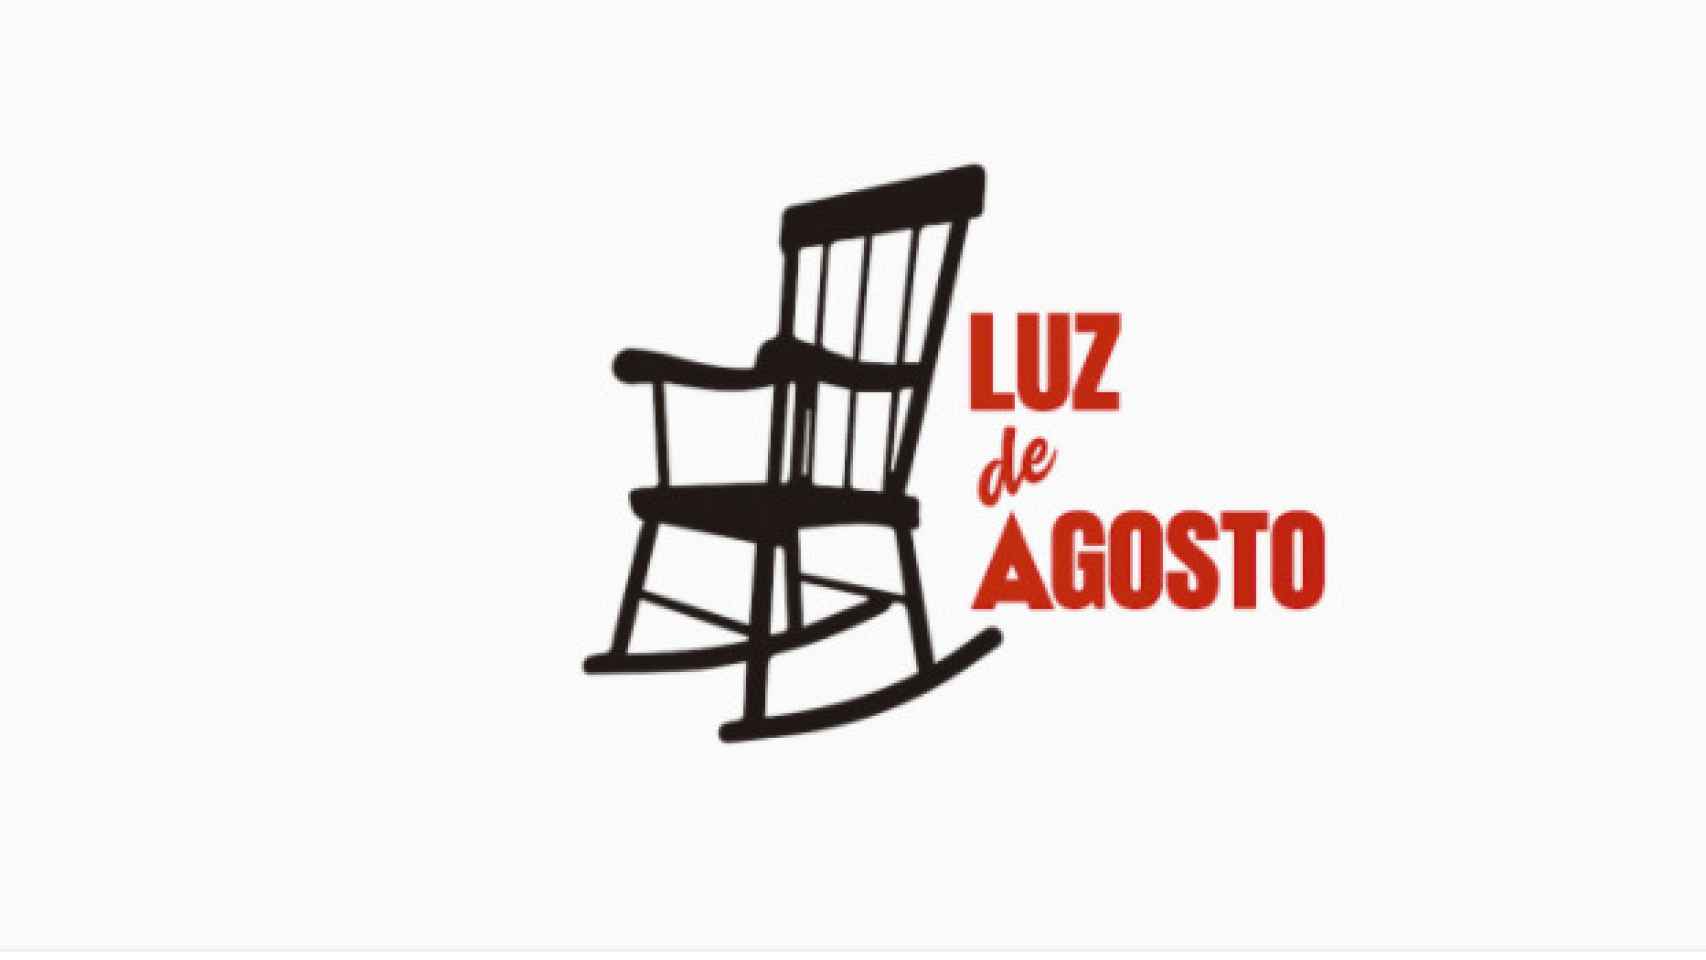 El logo de la editorial Luz de agosto.